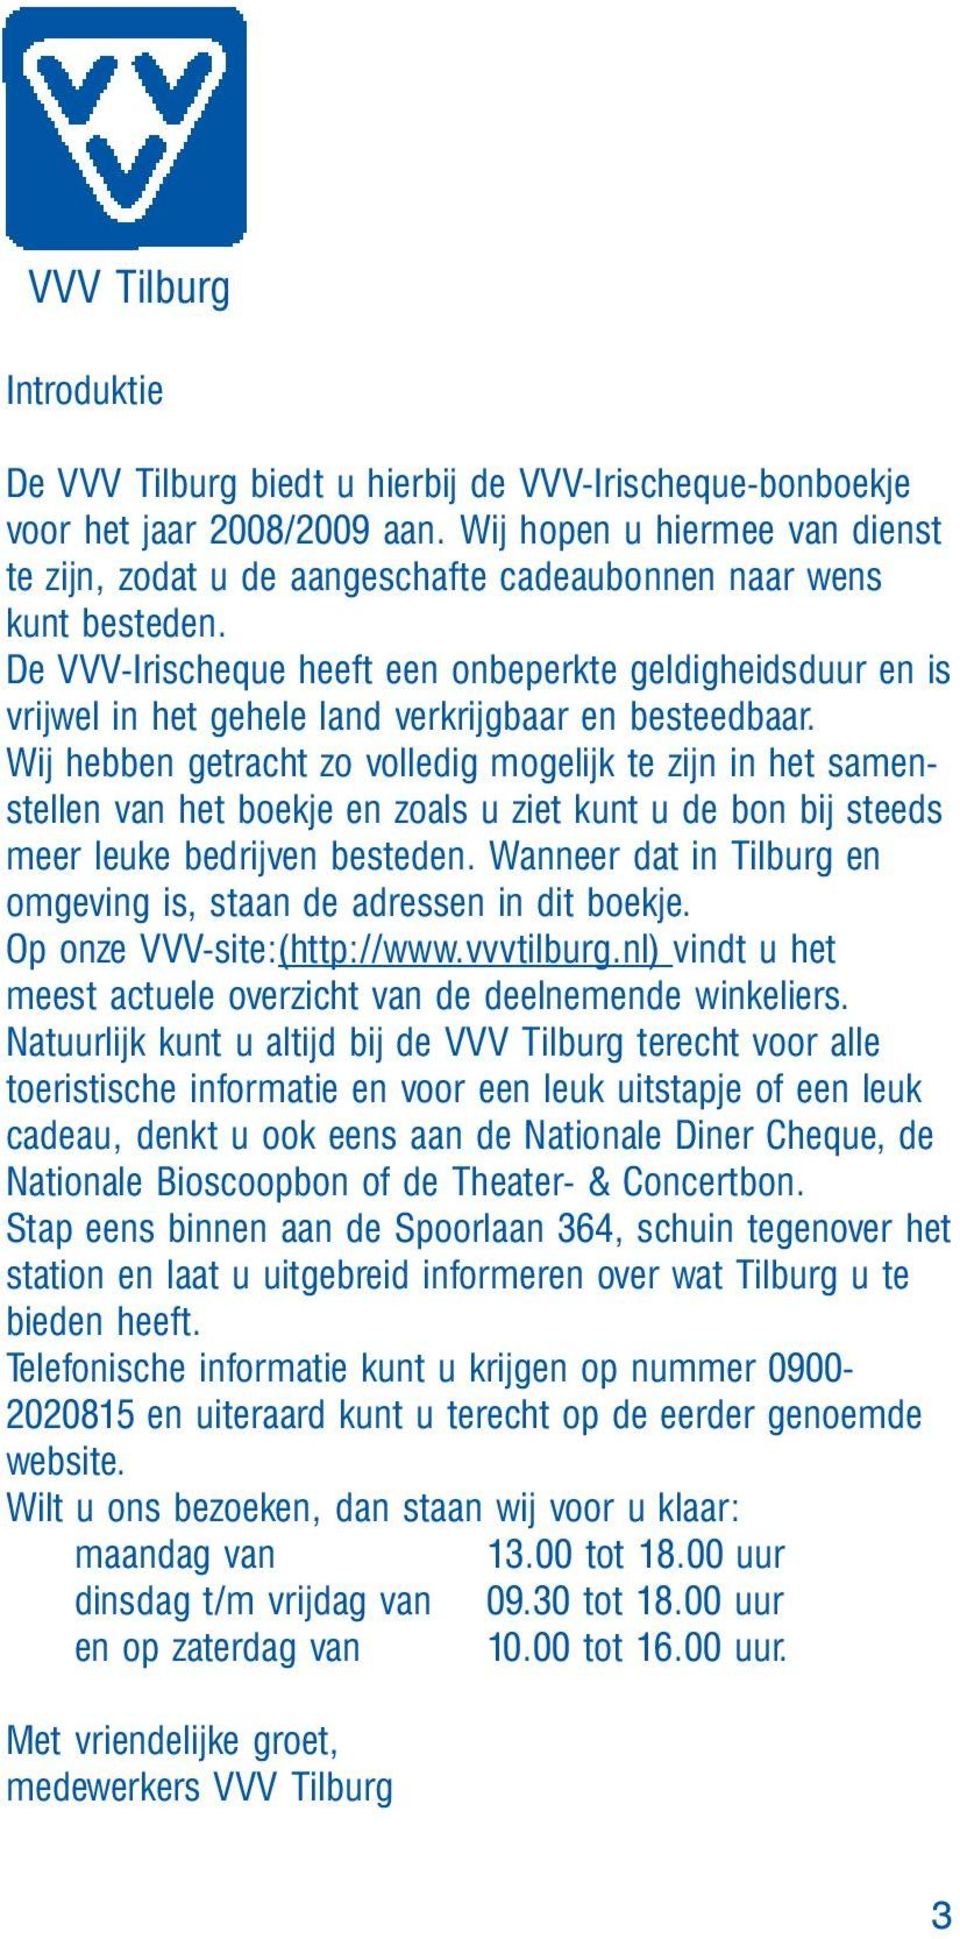 het formulier Moeras onderwijzen Uitgave VVV Tilburg voor Tilburg en omstreken - PDF Gratis download